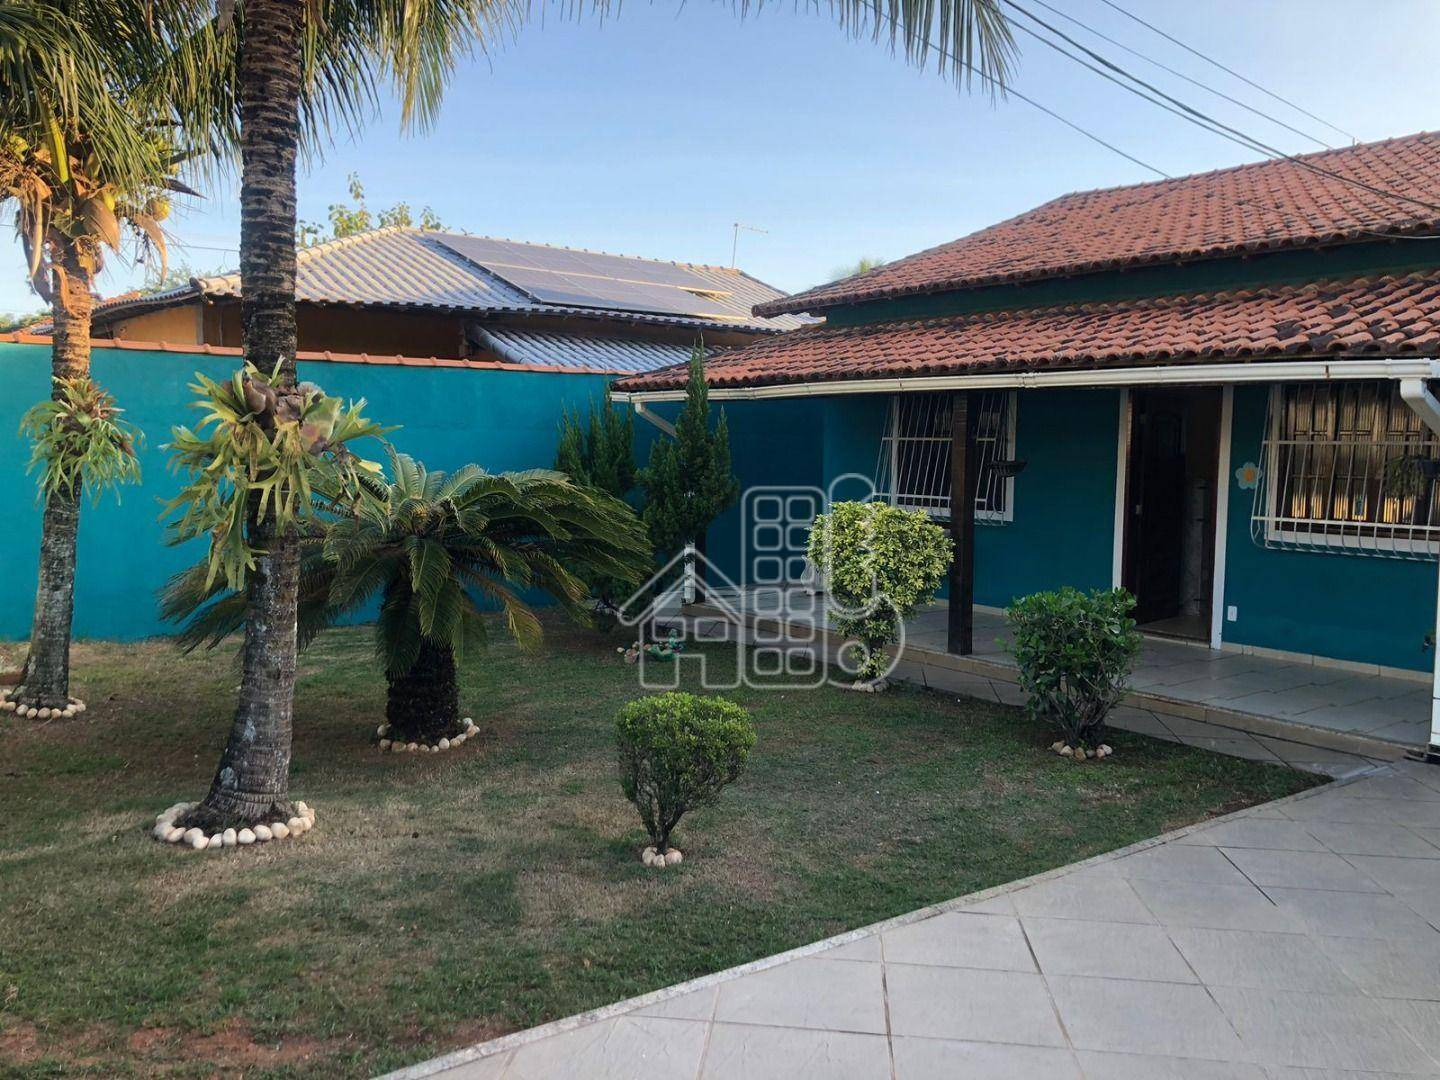 Casa com 3 dormitórios para alugar, 100 m² por R$ 3.000,00/mês - Praia de Itaipuaçu (Itaipuaçu) - Maricá/RJ